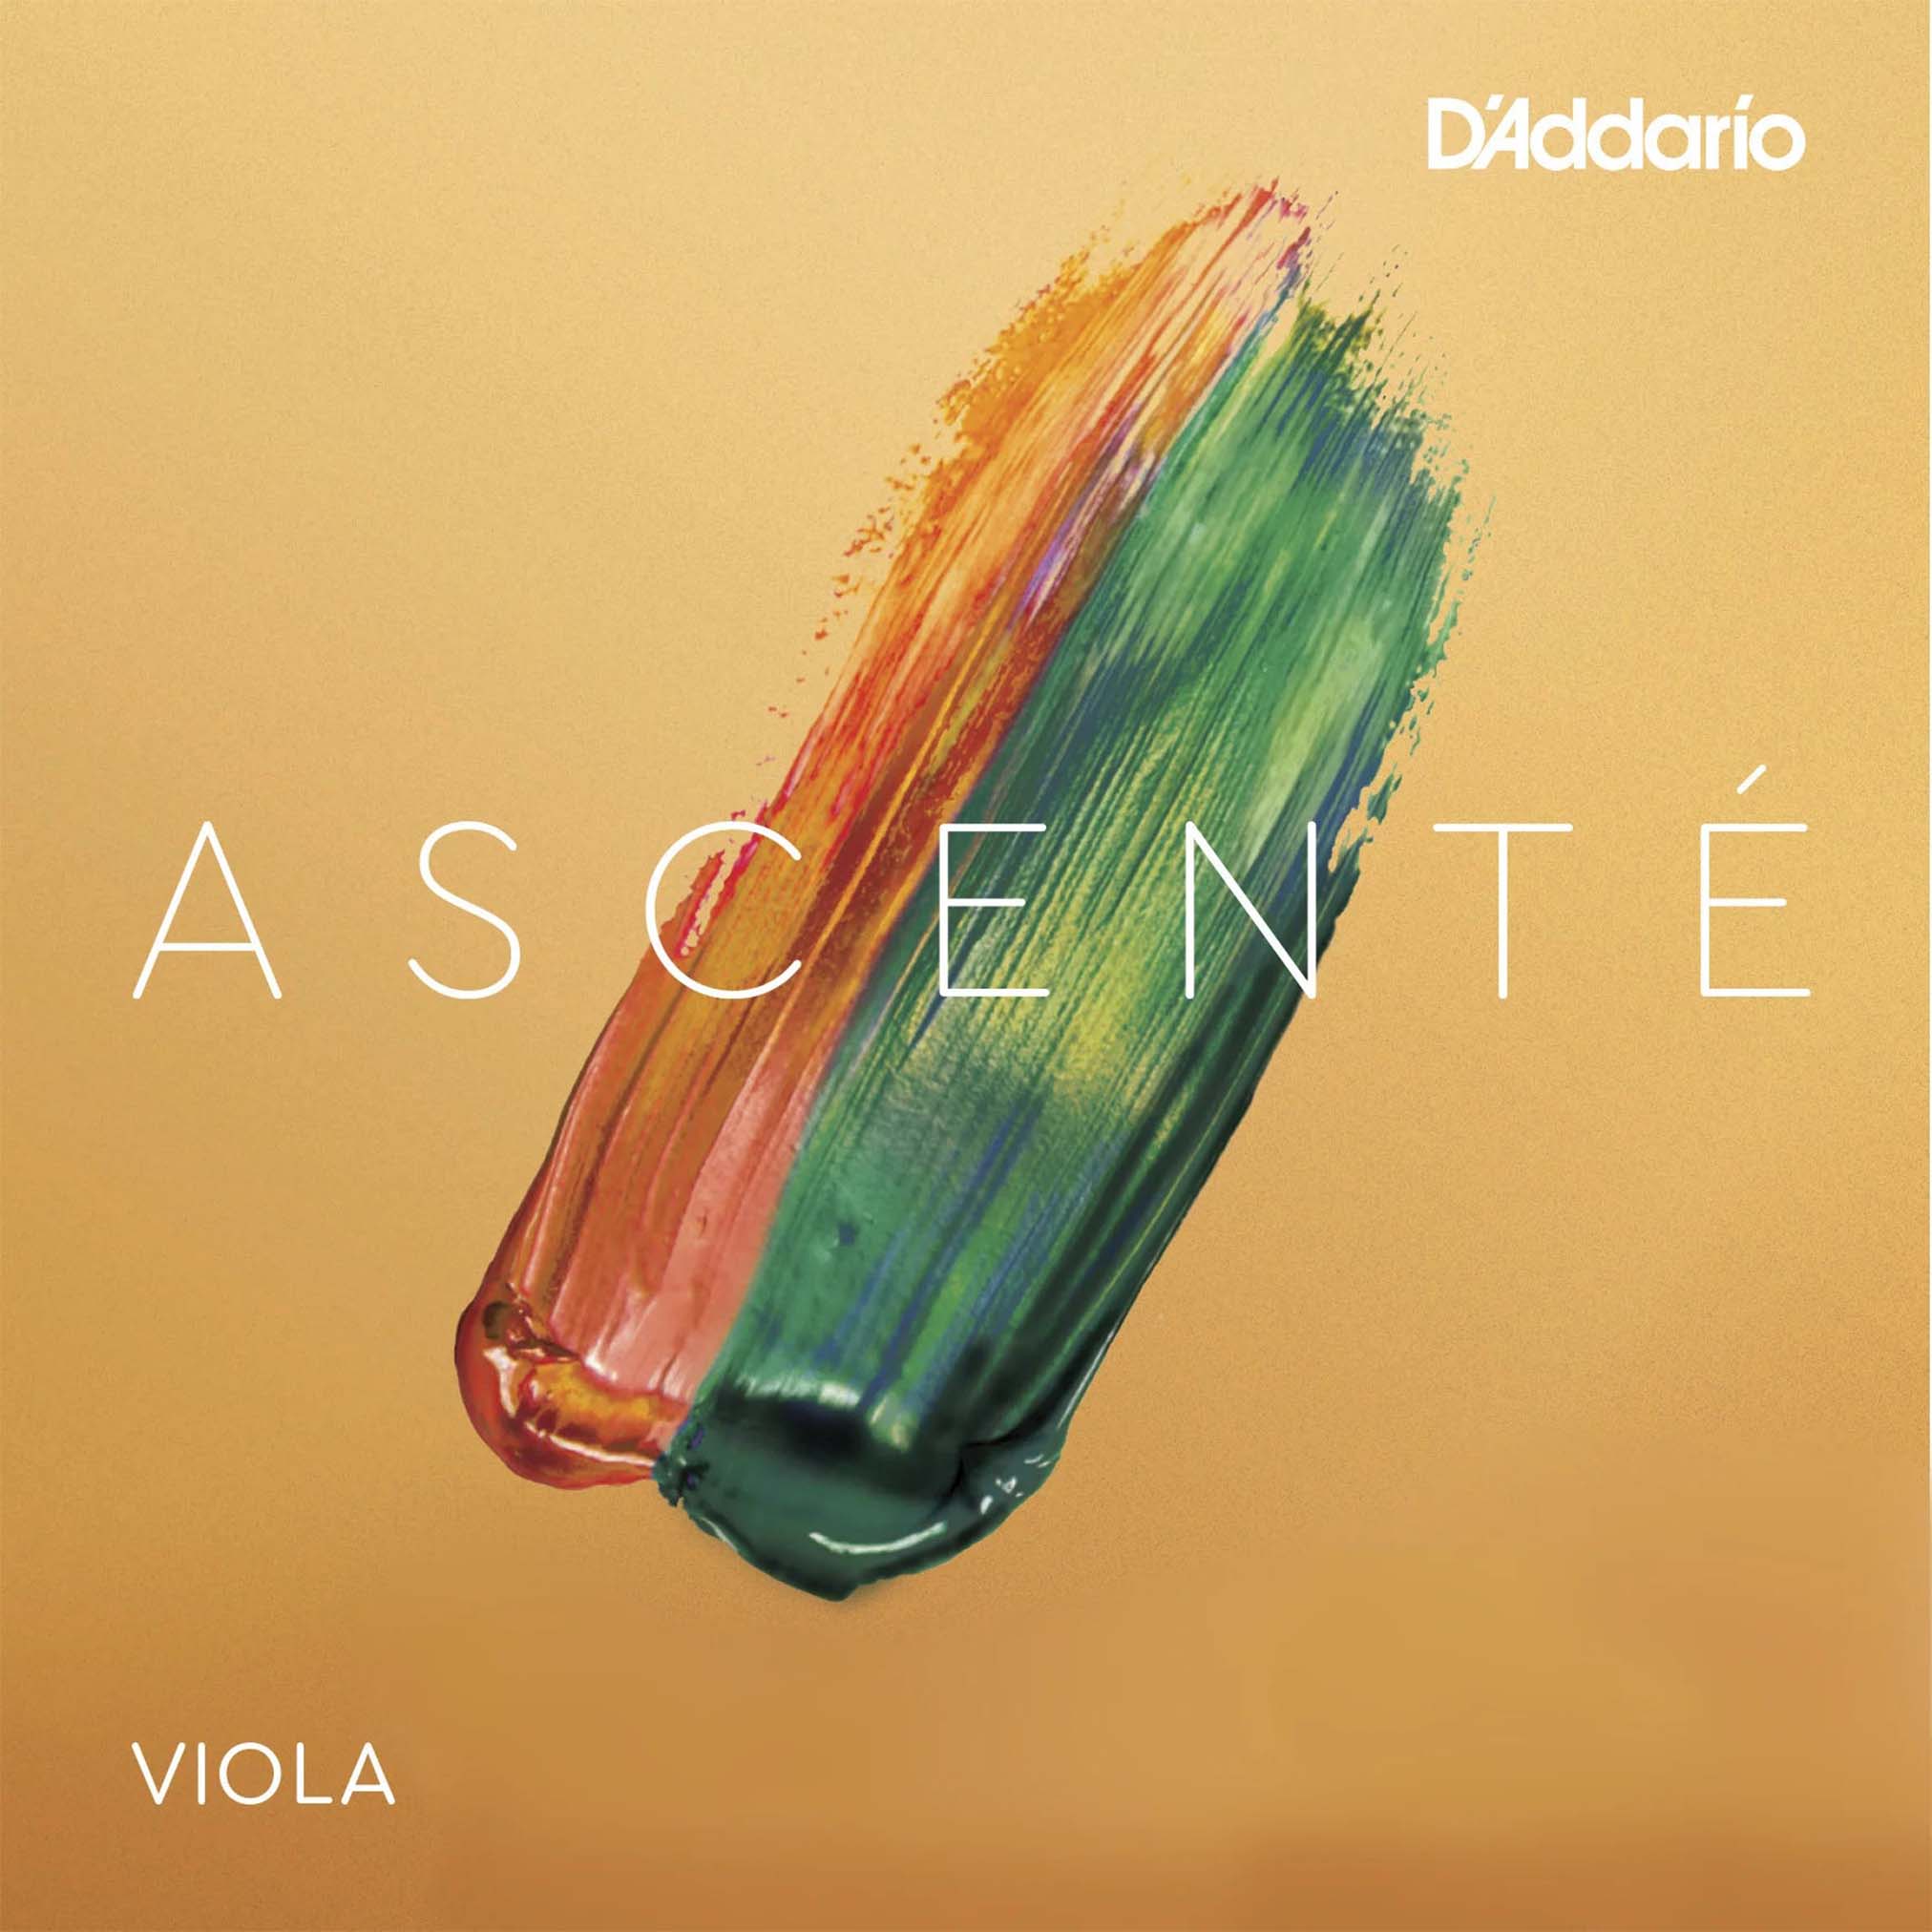 D'addario Ascenté Viola G String